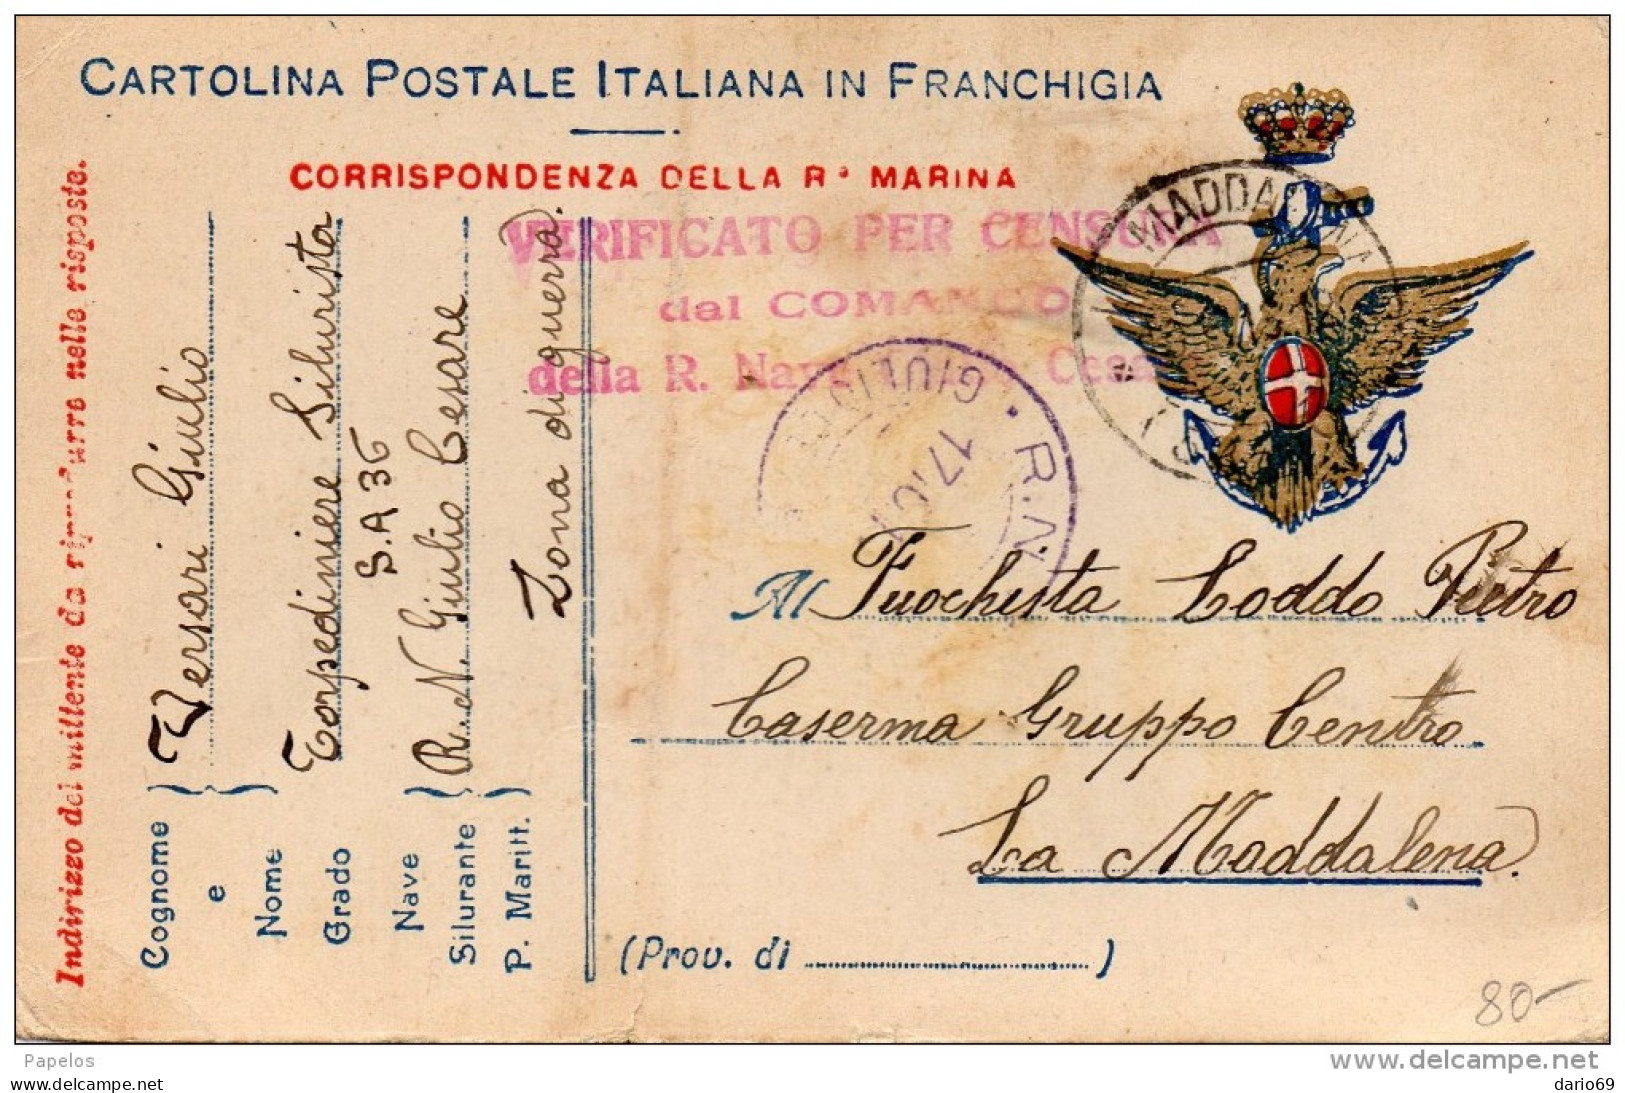 1916 CARTOLINA CON ANNULLO NAVE GIULIO CESARE  + VERIFICA PER CENSURA - Guerre 1914-18